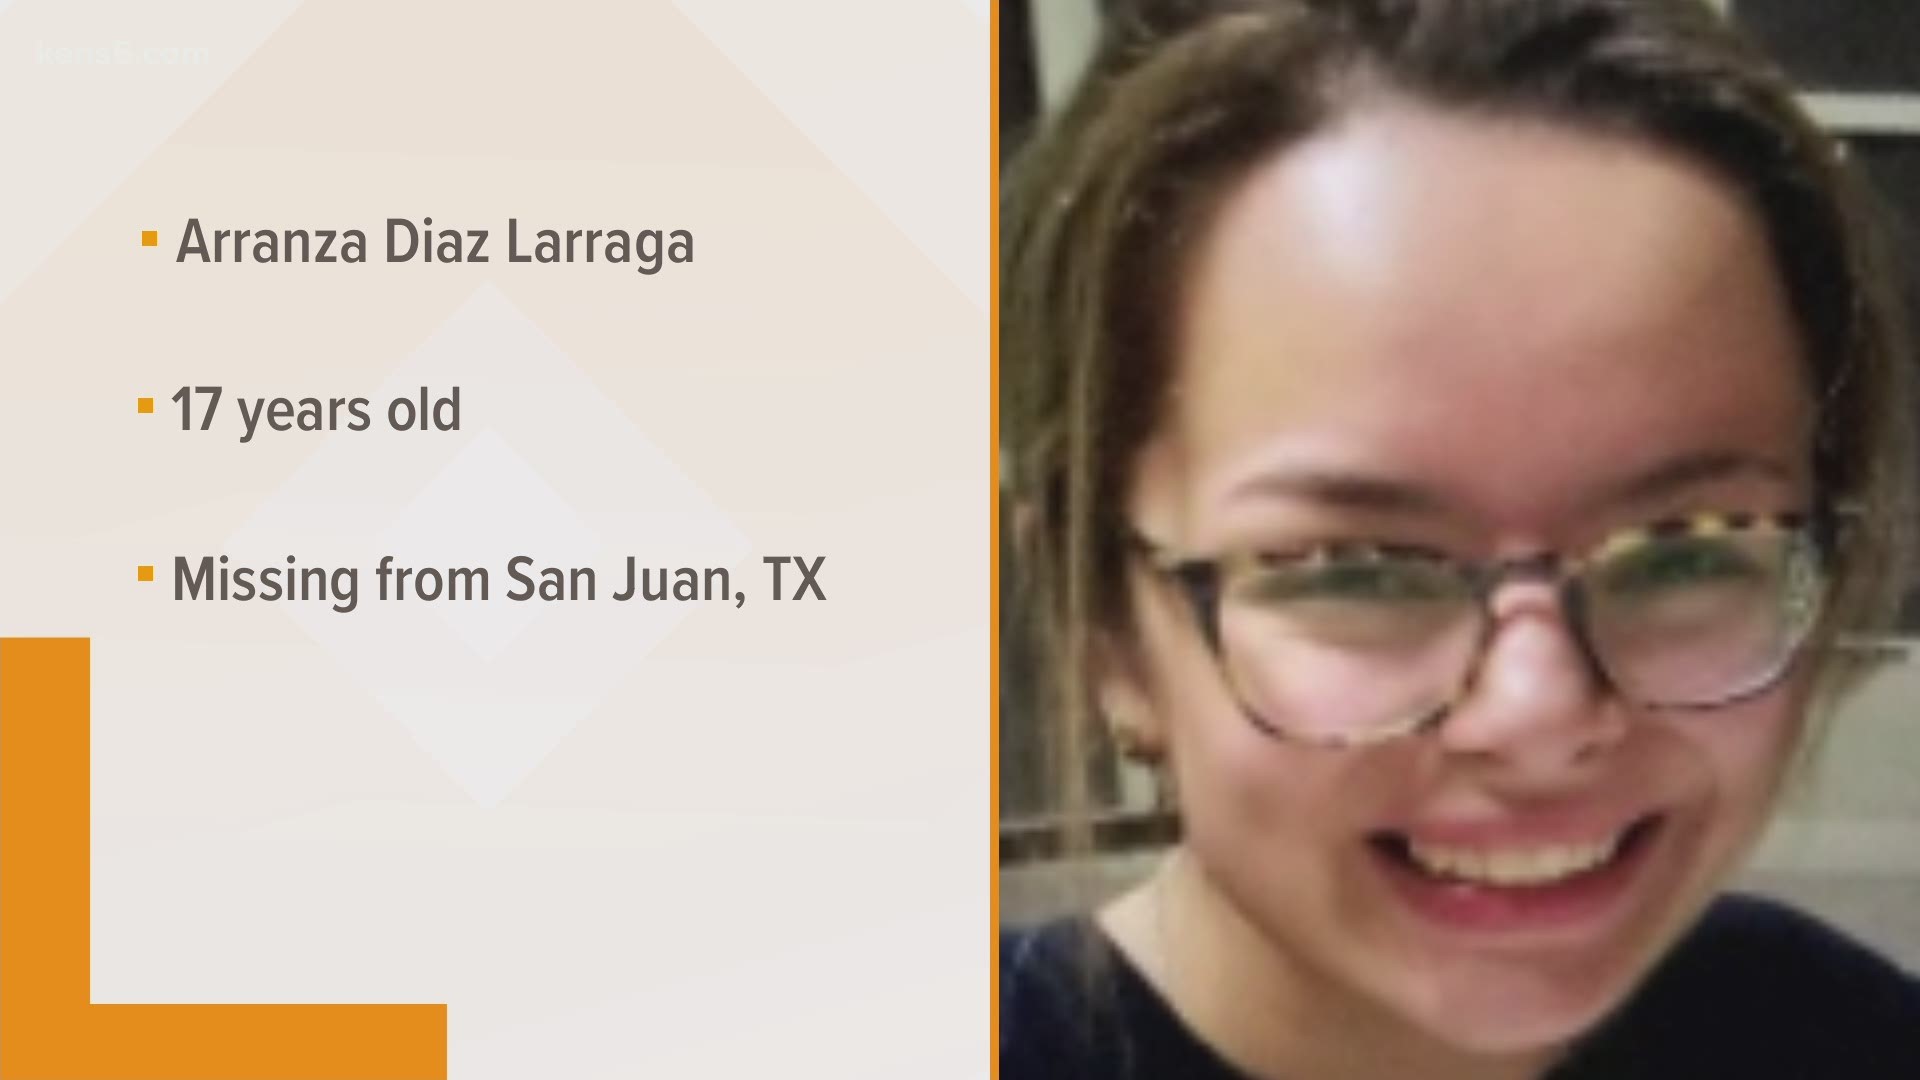 Arranza Diaz Larraga was last seen Tuesday evening.